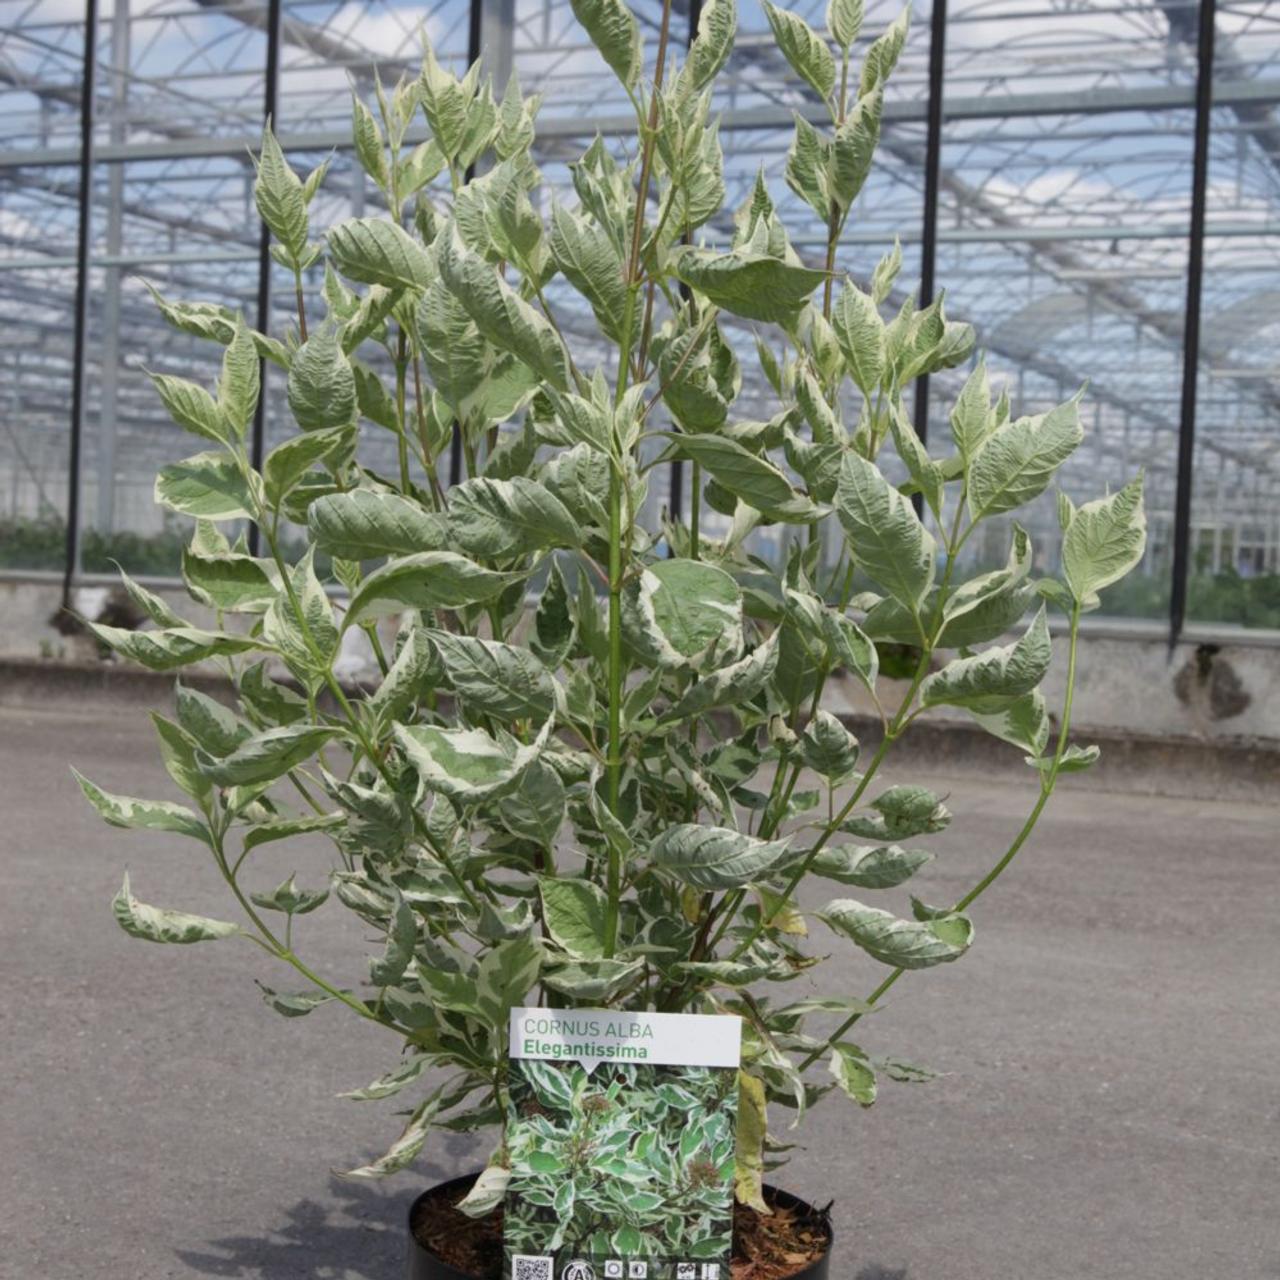 Cornus alba 'Elegantissima' plant